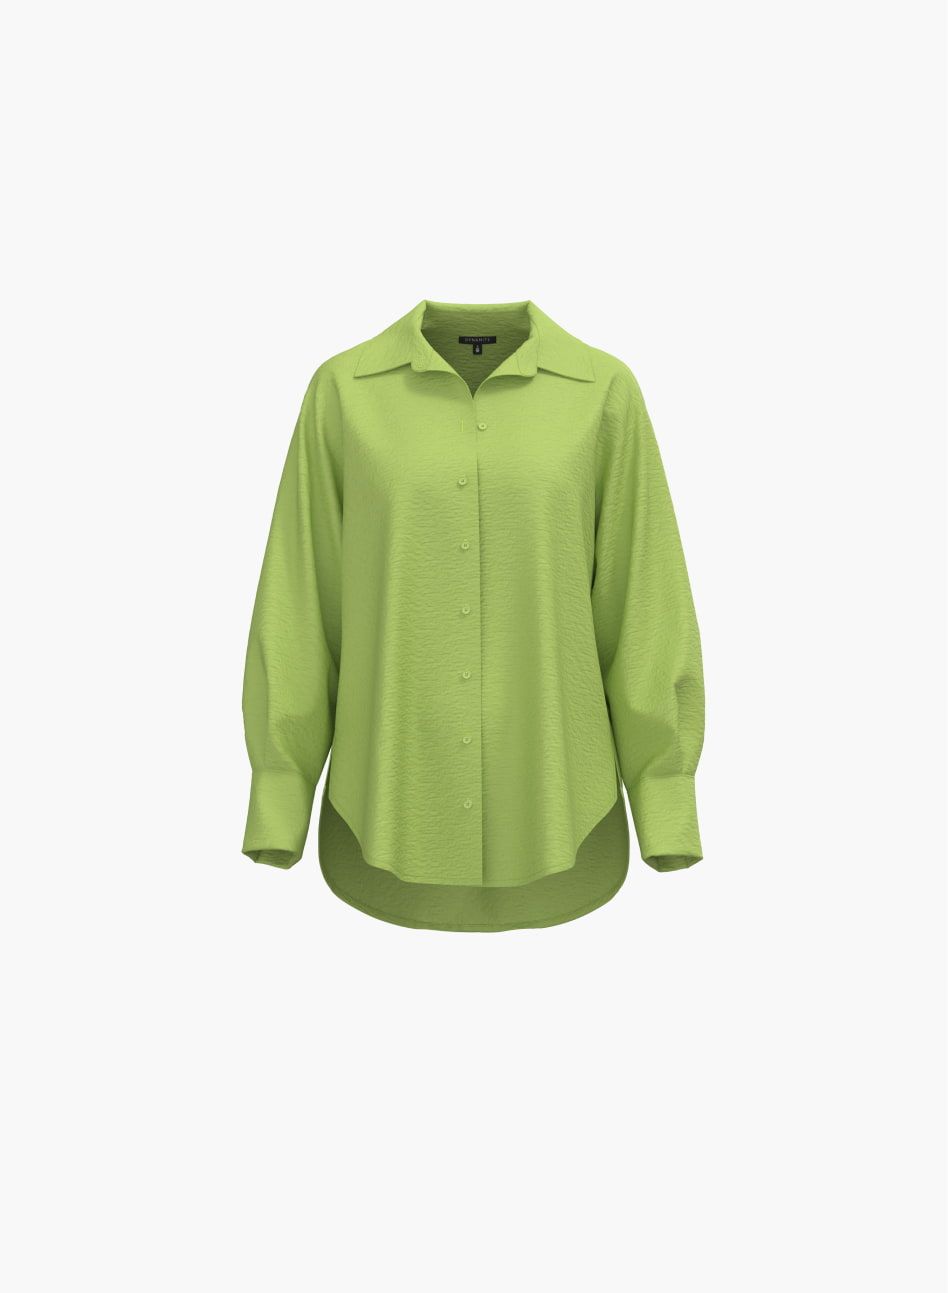 Une chemise boutonnée verte.